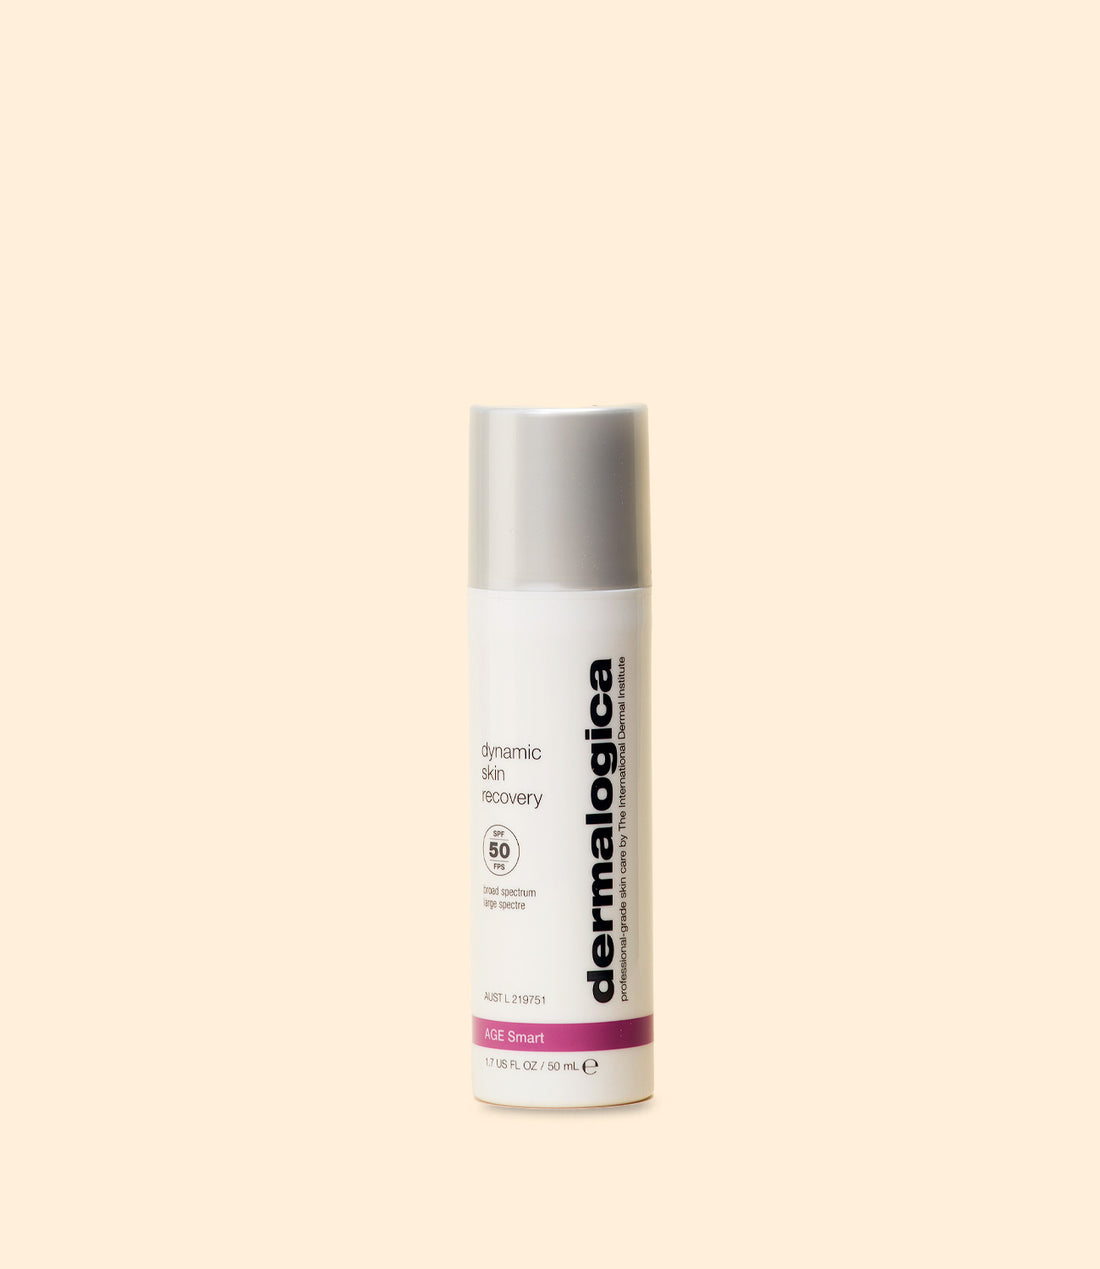 crème hydratante pour le visage dynamic skin recovery SPF 50 par Dermalogica 50 ml